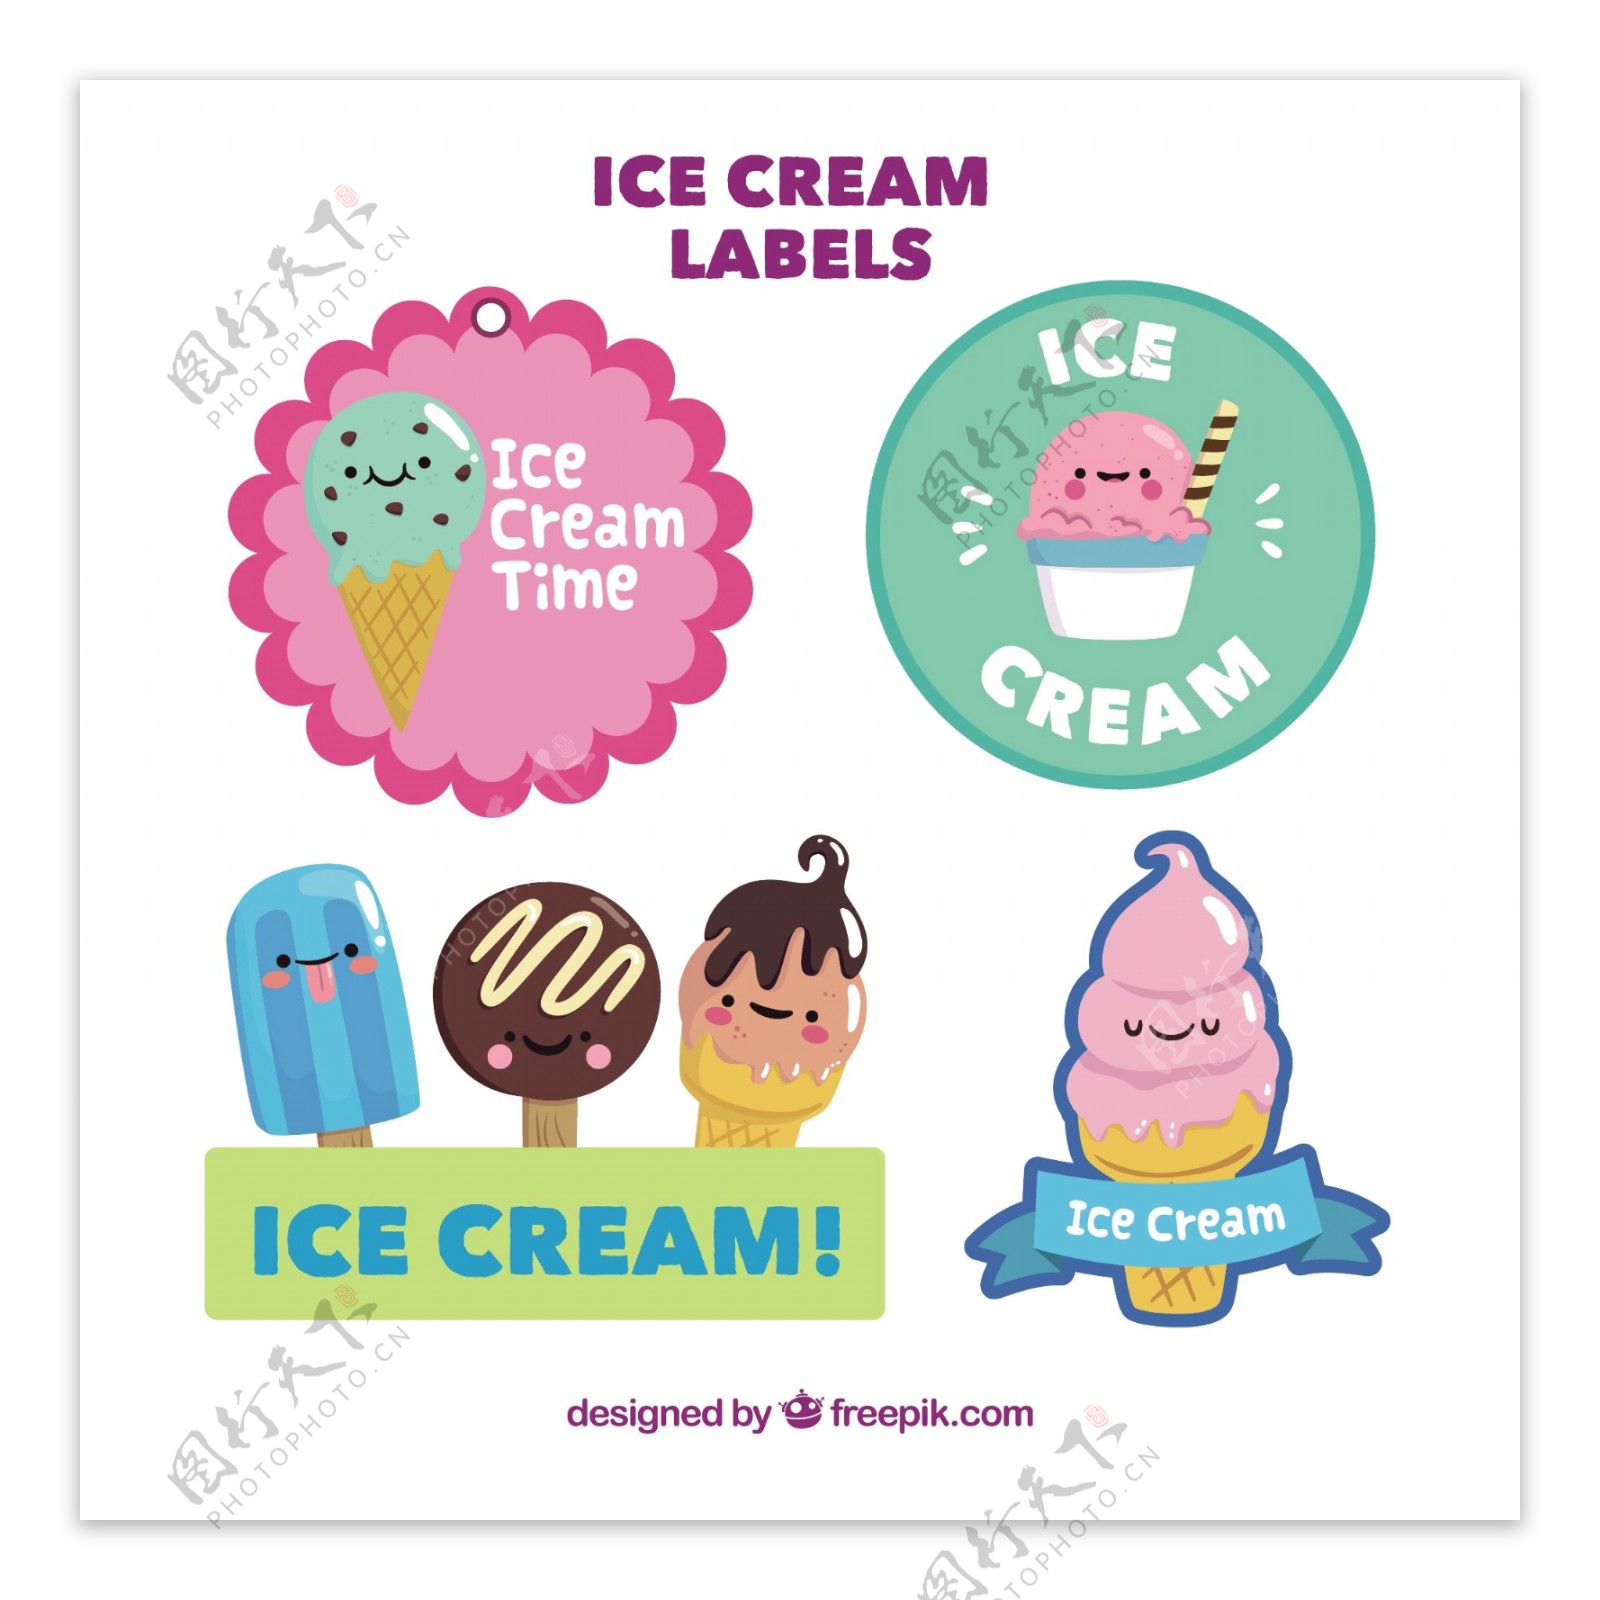 可爱卡通风格冰淇淋贴纸标签